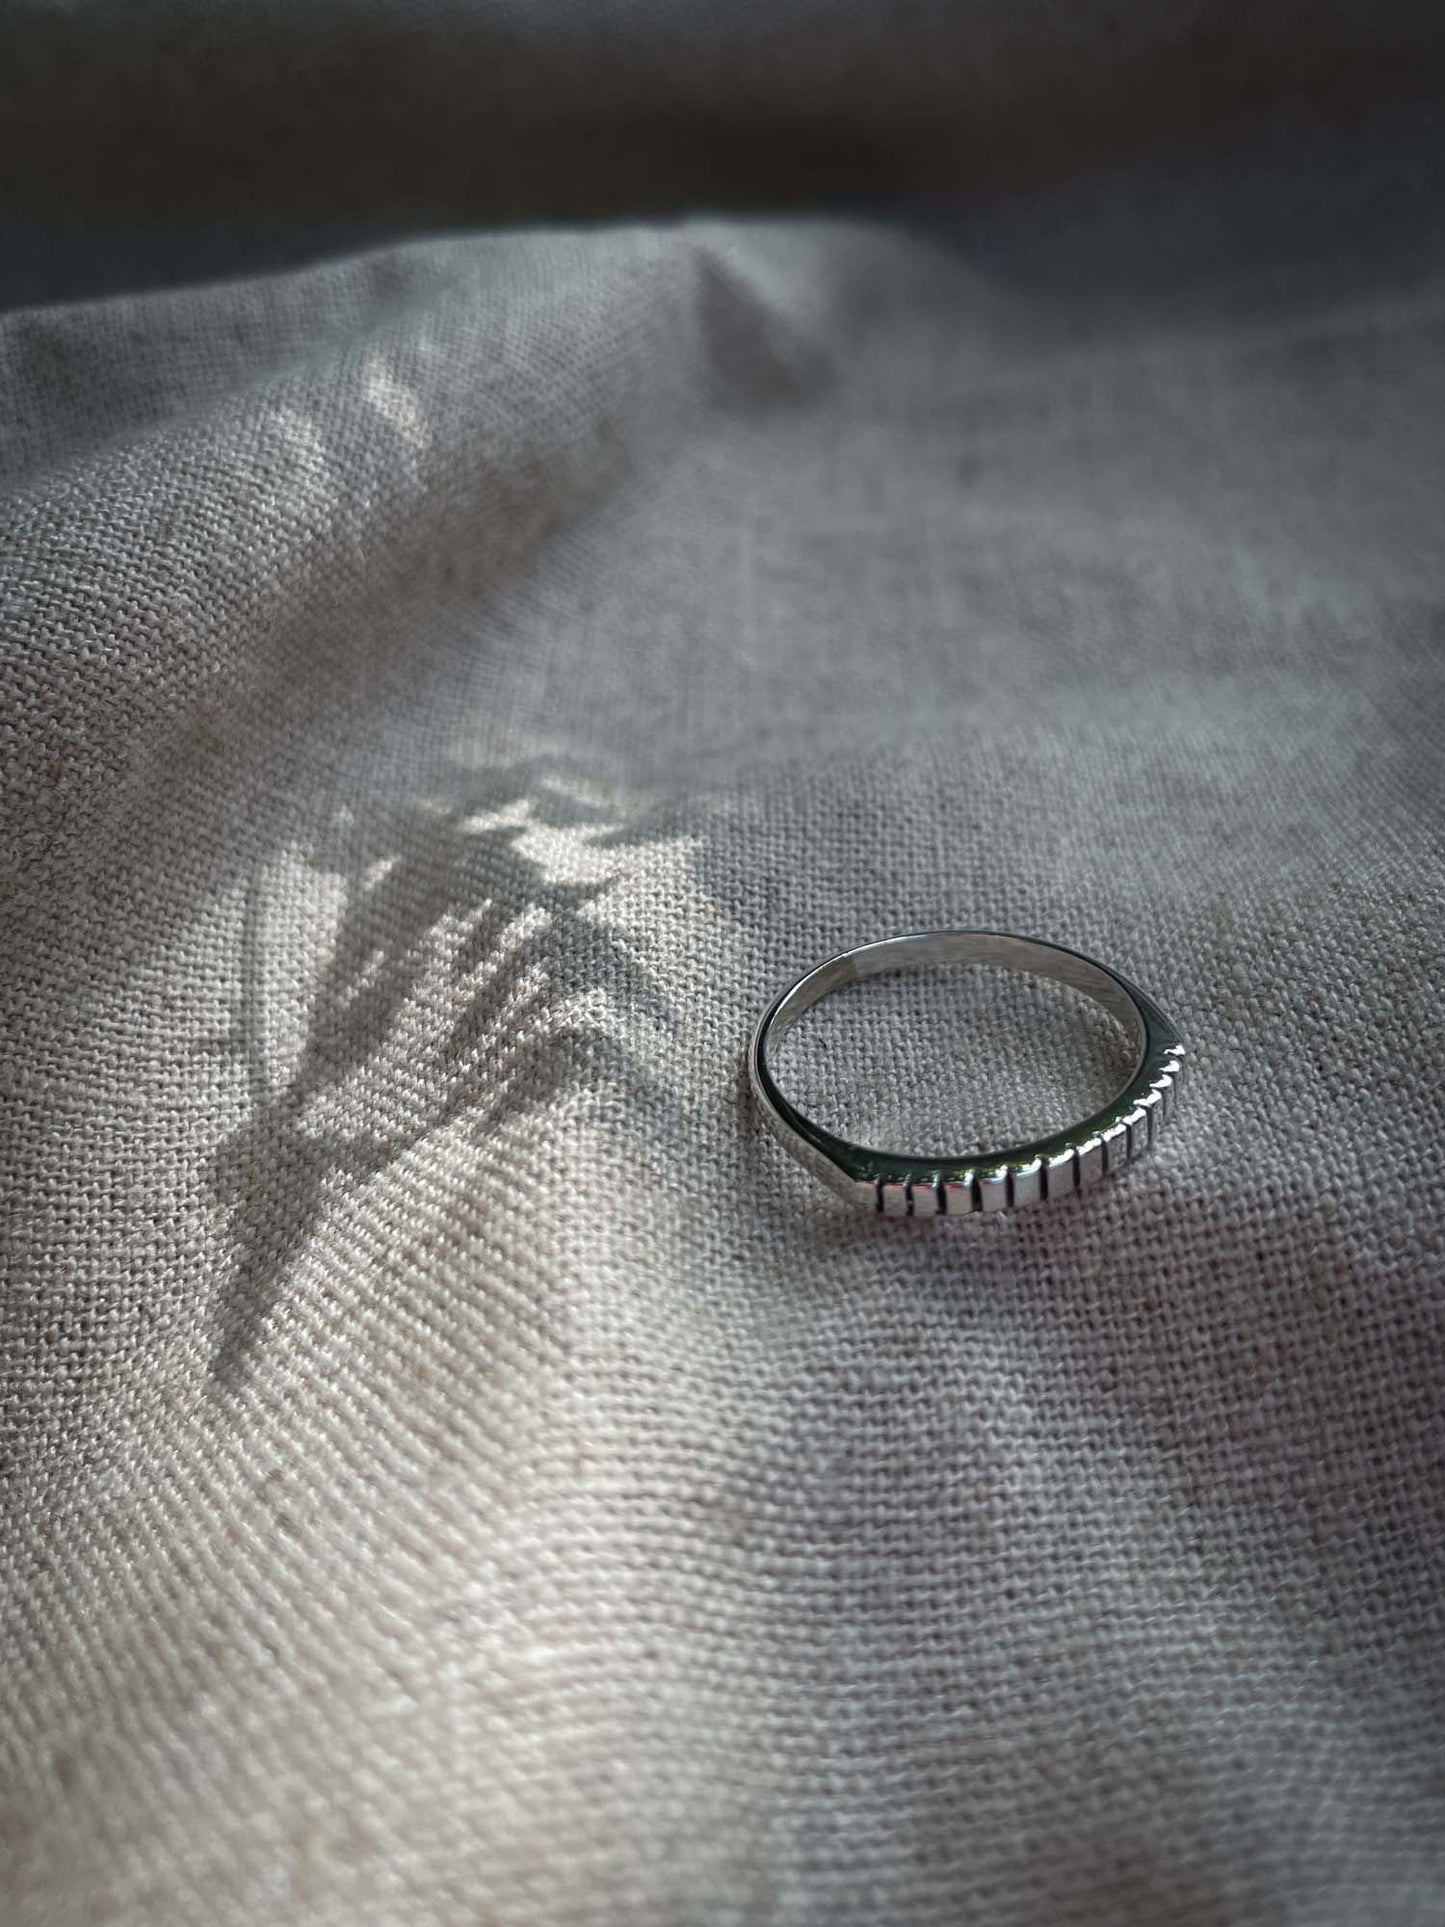 Razor Ring in Silver